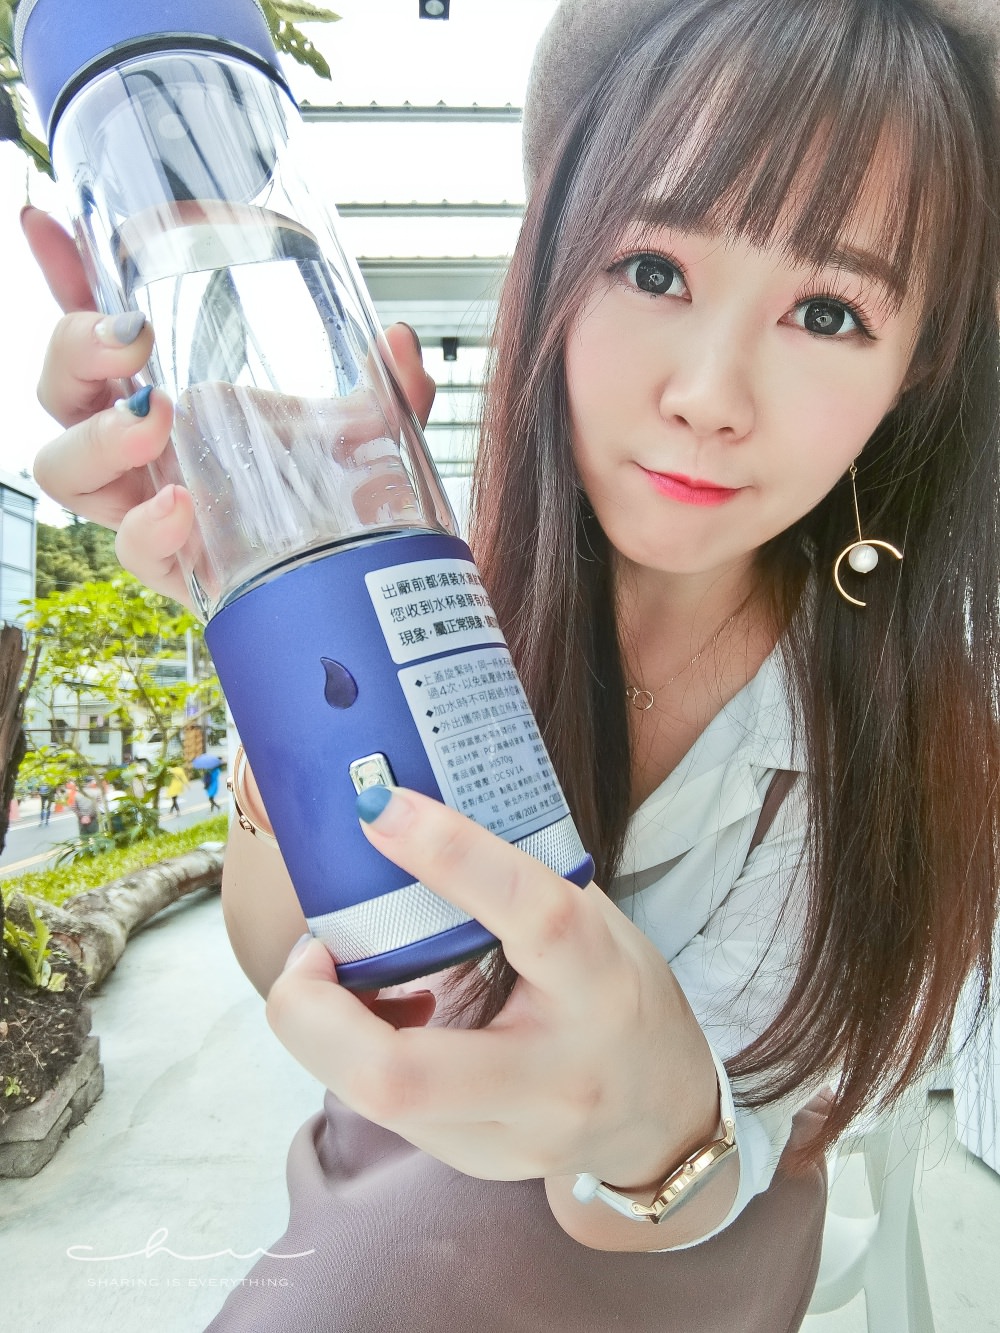 水素水,水素水機,水素水杯,水素水日本,康水工坊,水素水是什麼,水素水原理,水素水台灣